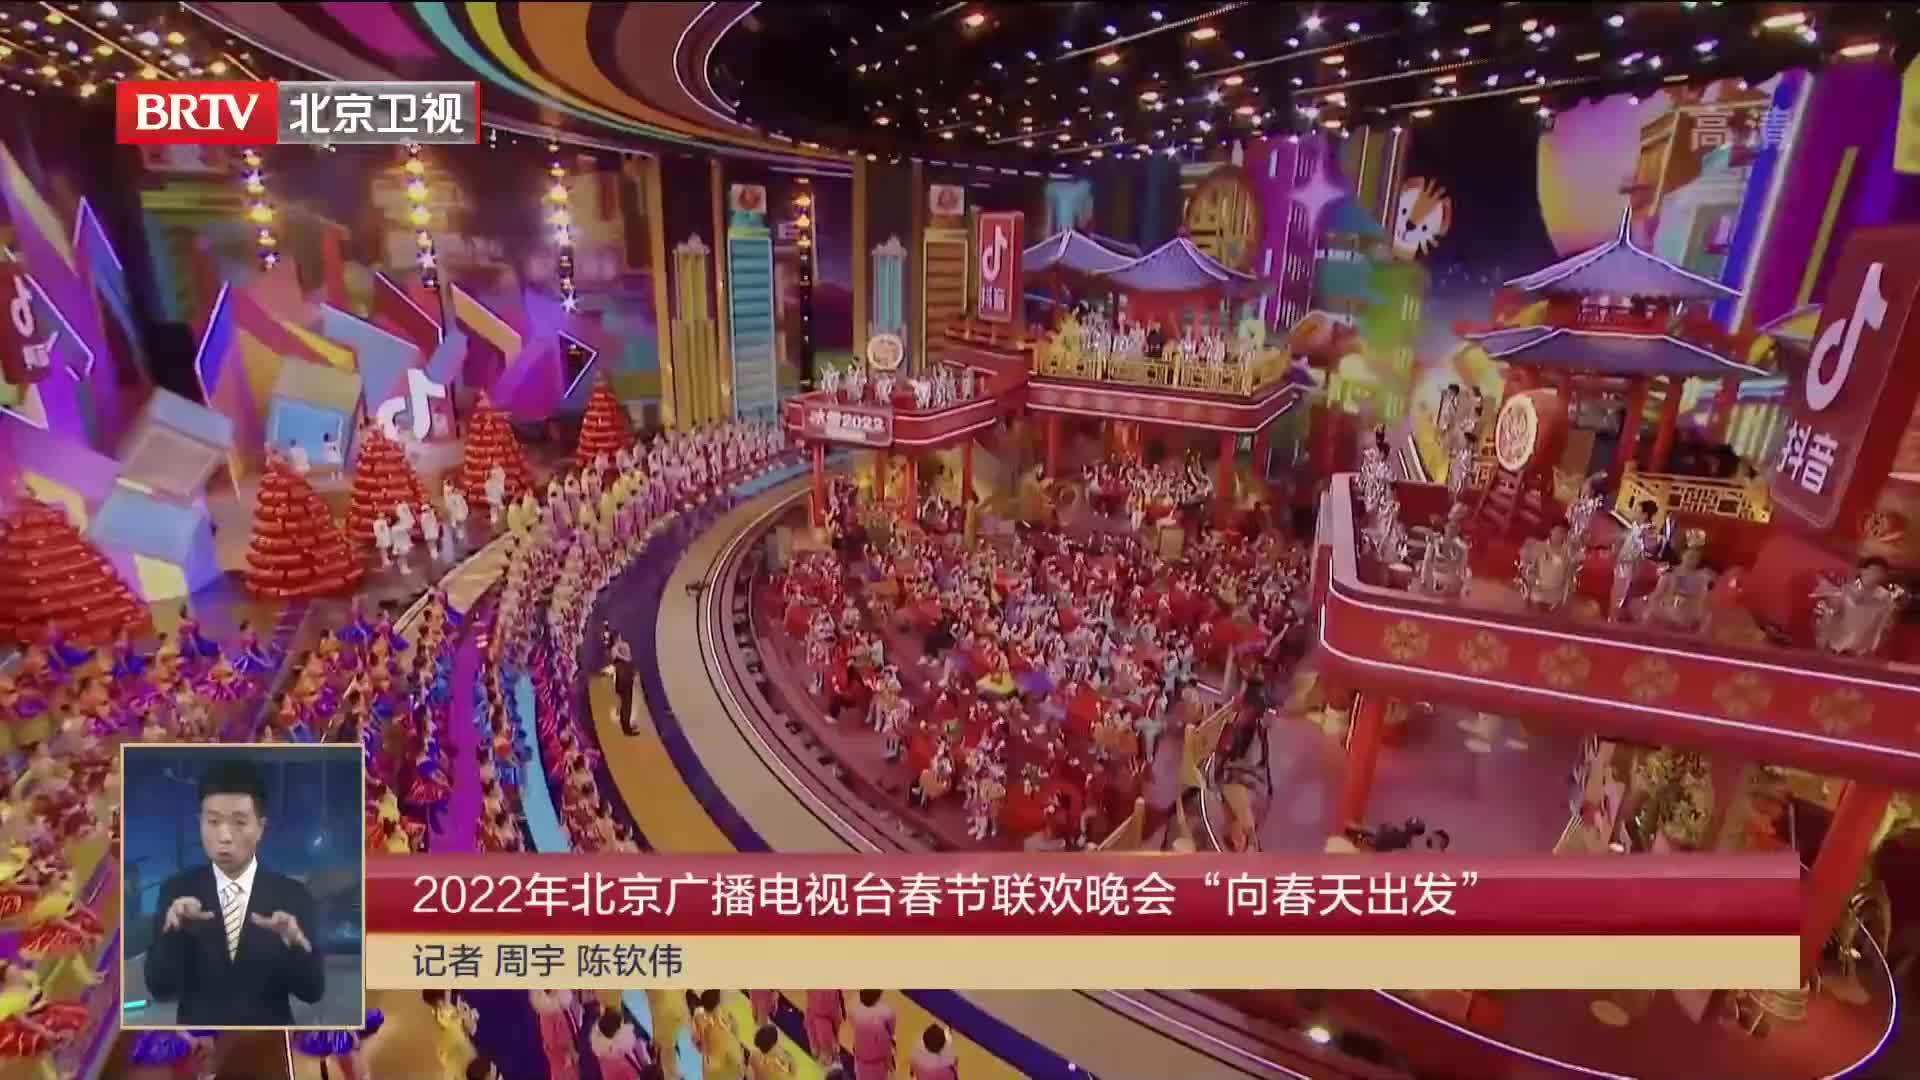 2022年北京广播电视台春节联欢晚会“向春天出发”